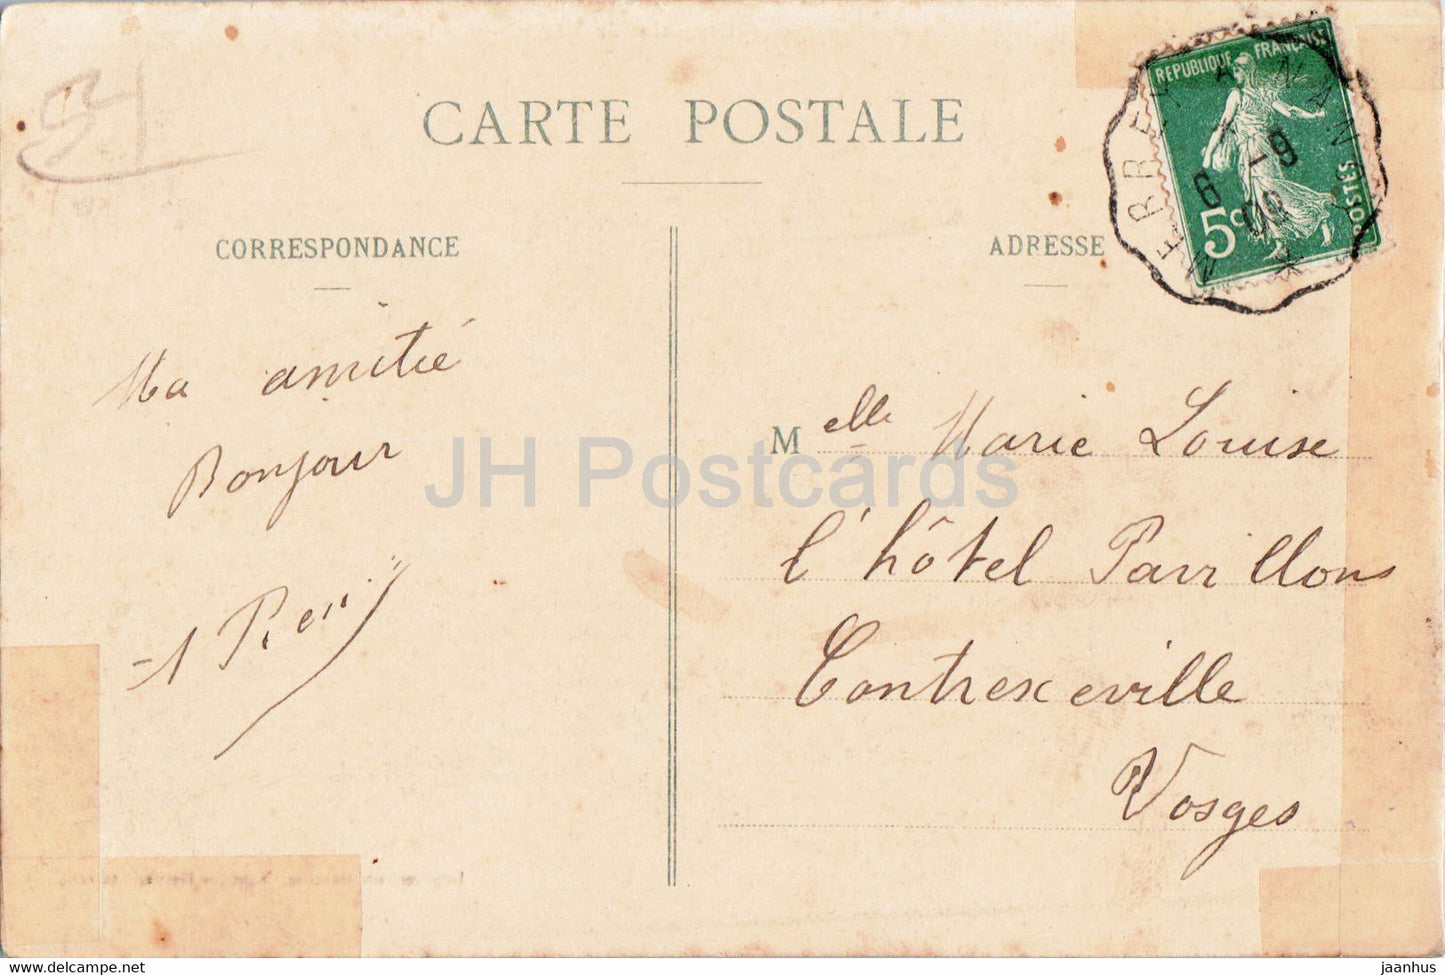 Exposition de Nancy - Les Palais - 5 - 1 - old postcard - 1909 - France - used